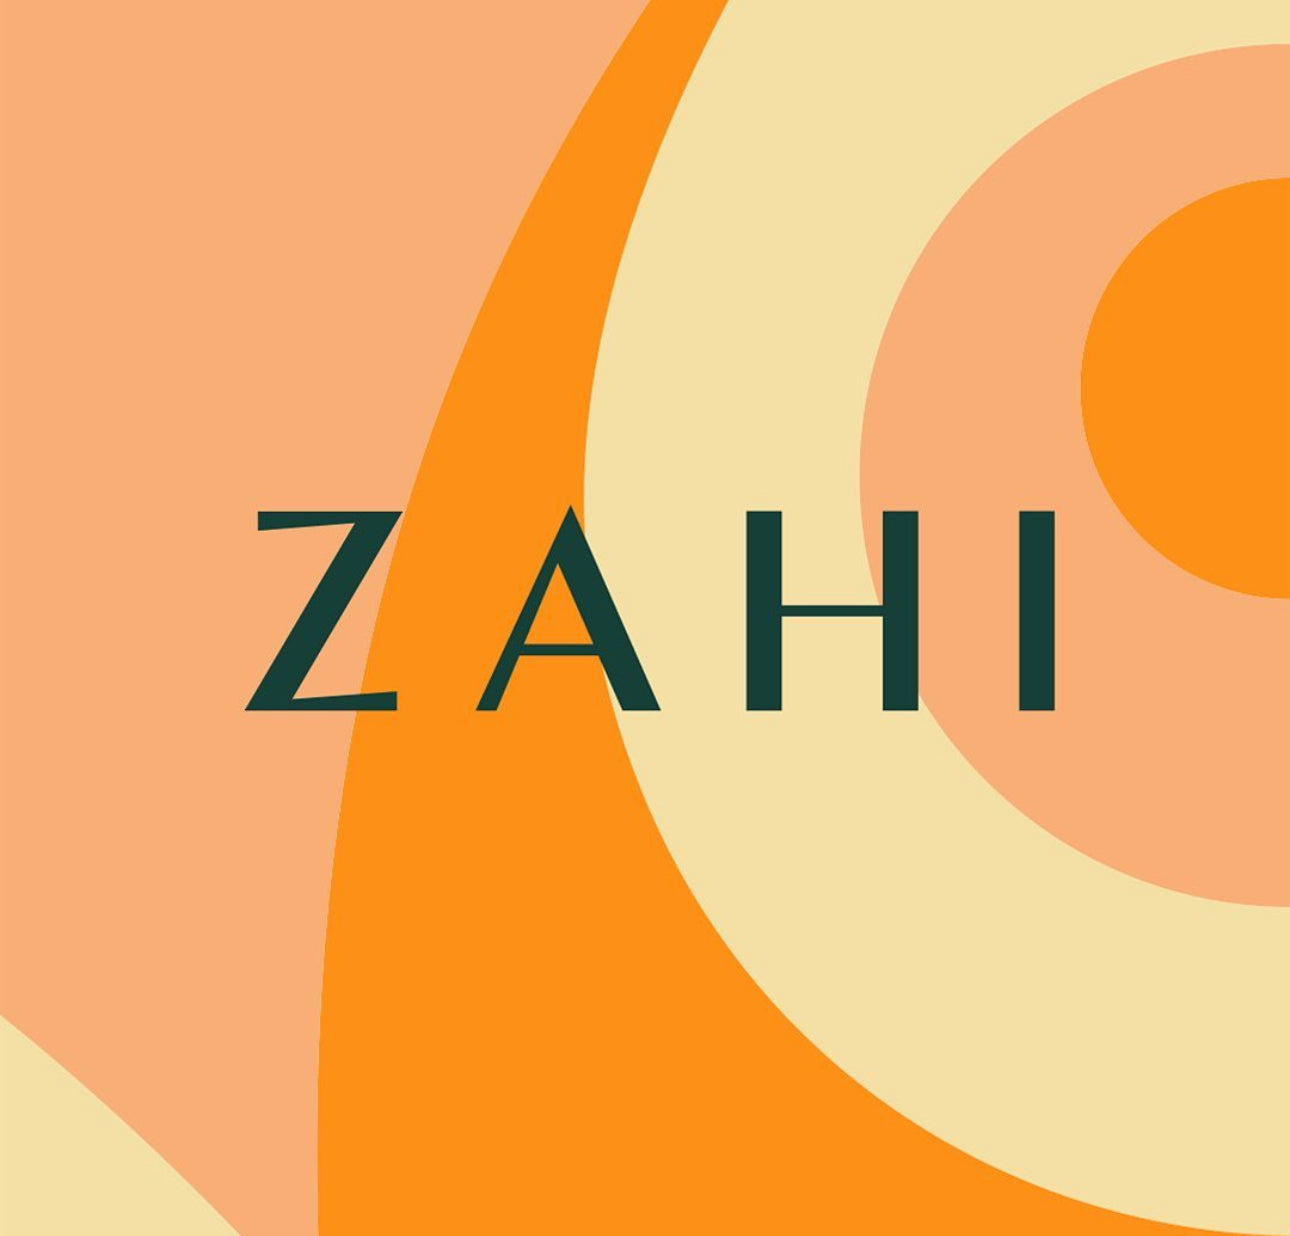 Zahi